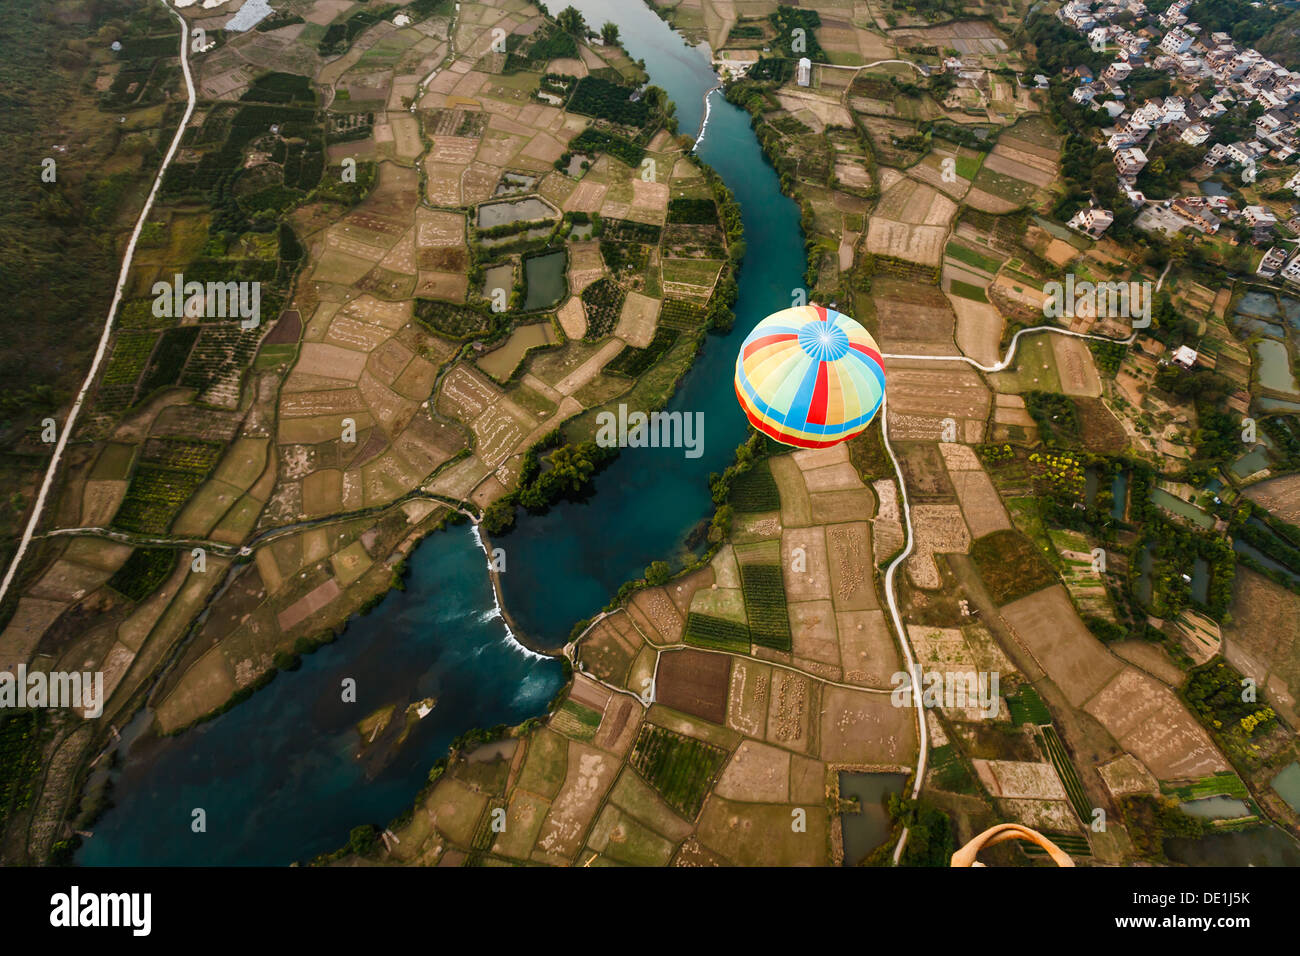 Haut en couleur d'un ballon à air chaud contraste avec les champs cultivés terne en vue aérienne d'un ballon supérieur de la rivière Li, Chine Banque D'Images